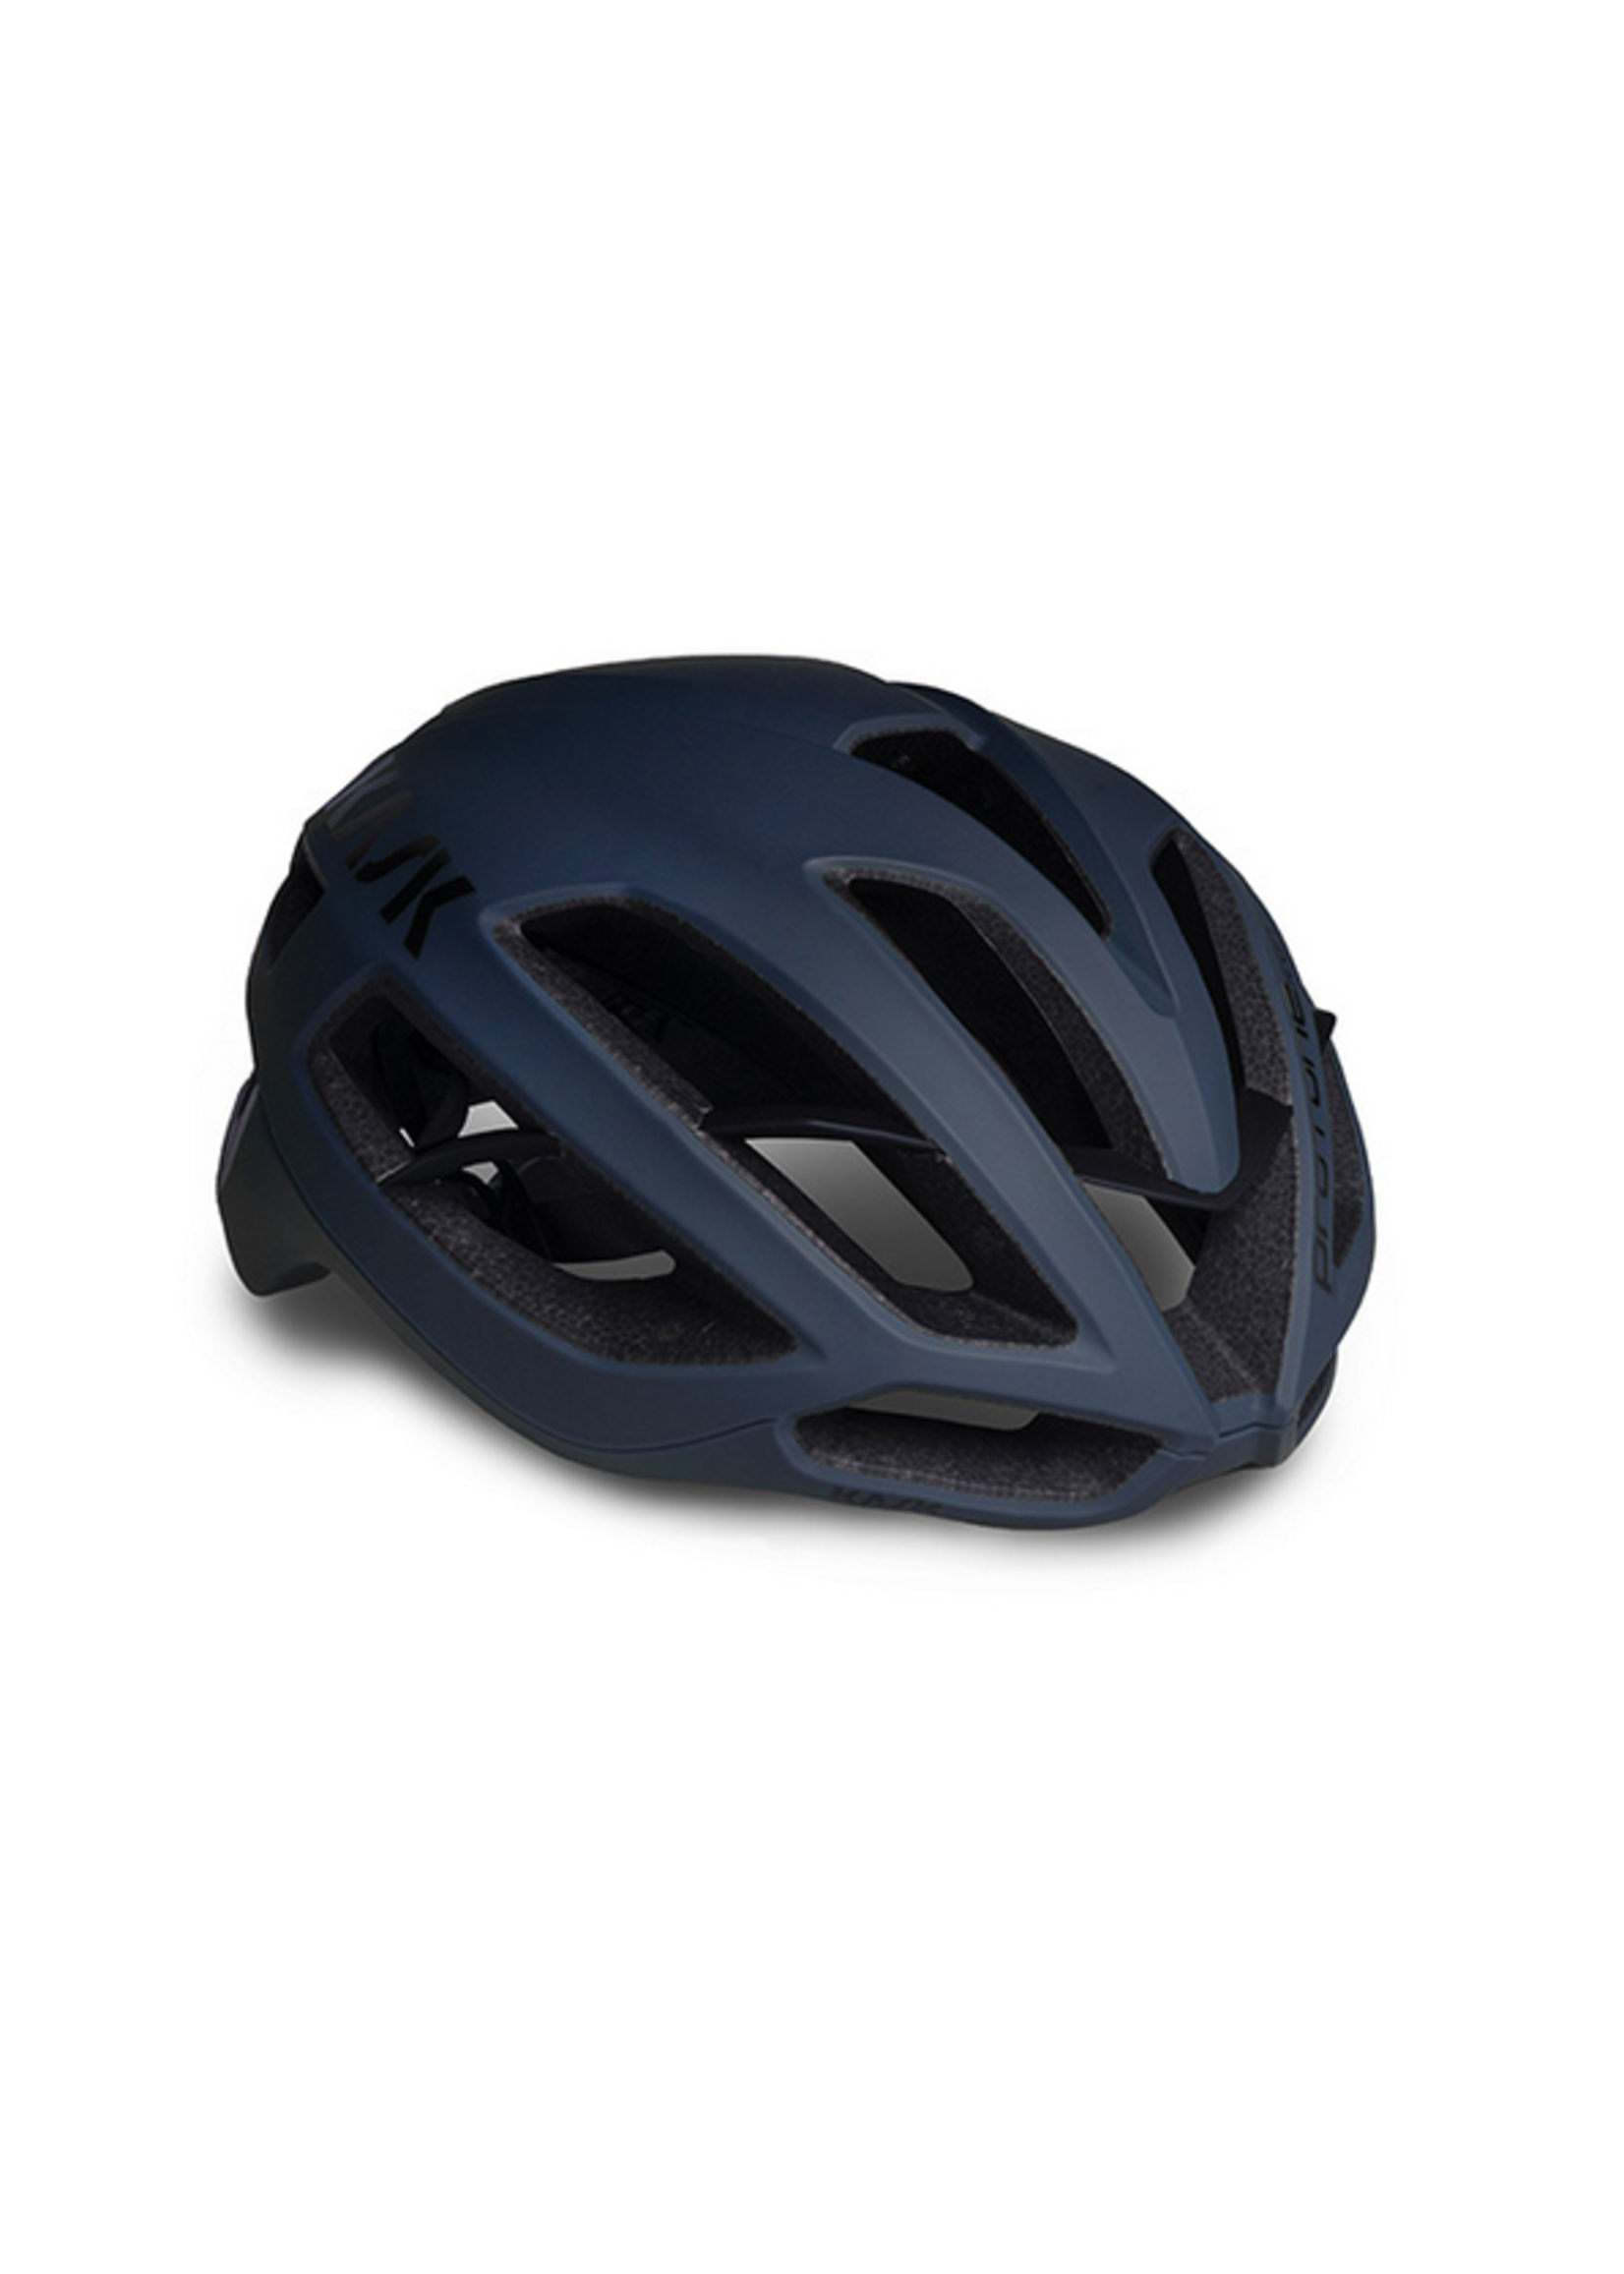 Vorming kleurstof democratische Partij Kask Protone Icon Helmet - Durango Bikes